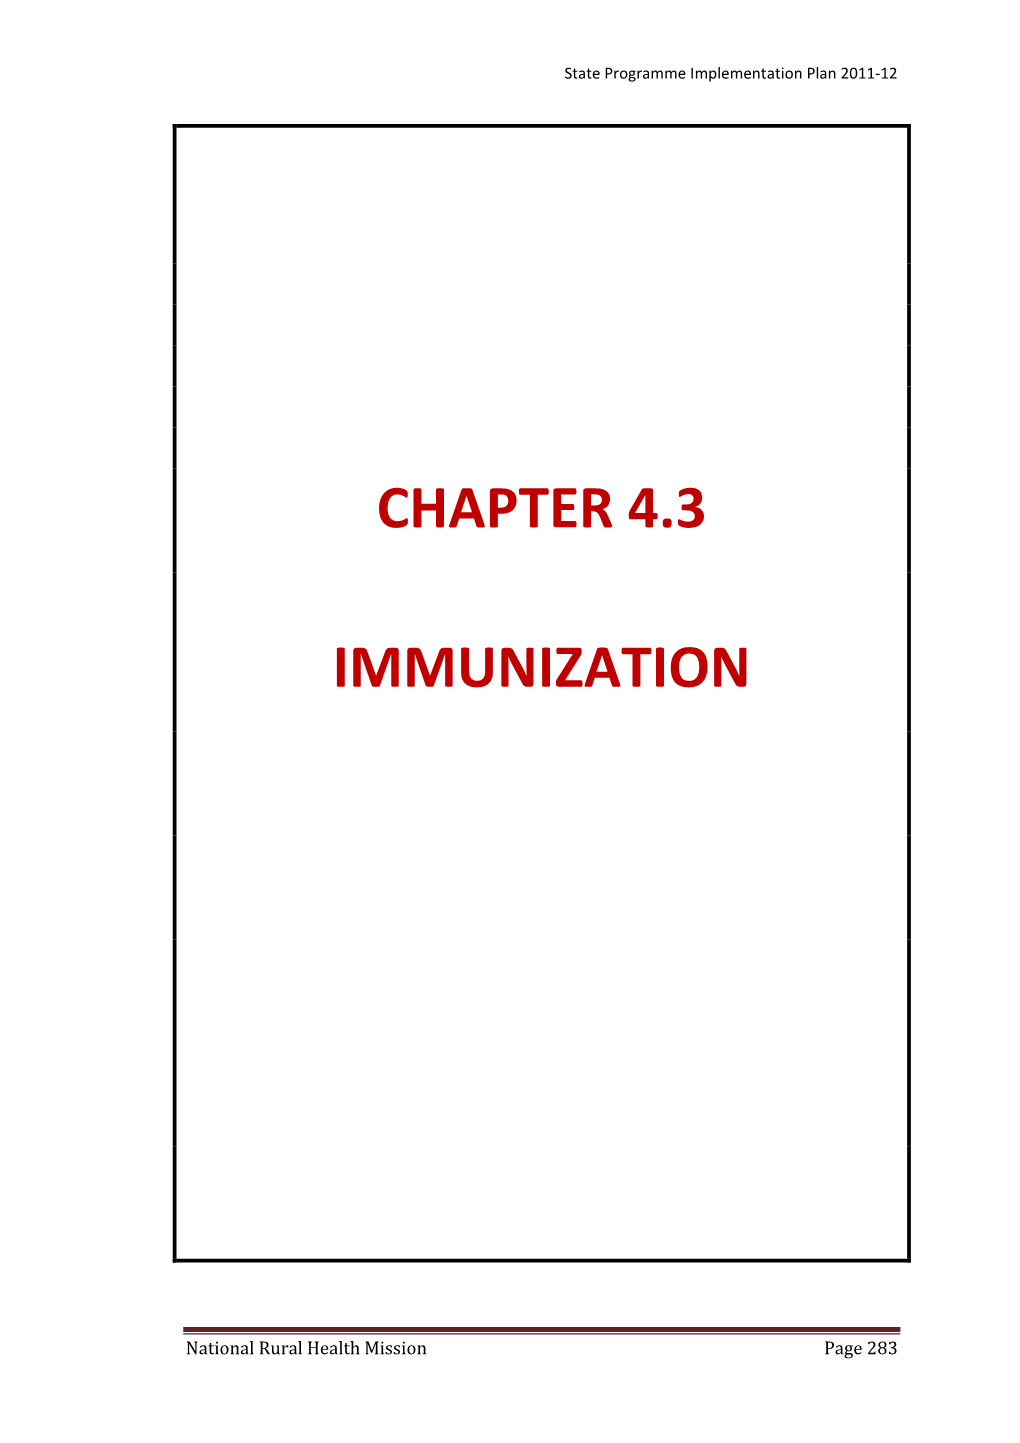 Chapter 4.3 Immunization